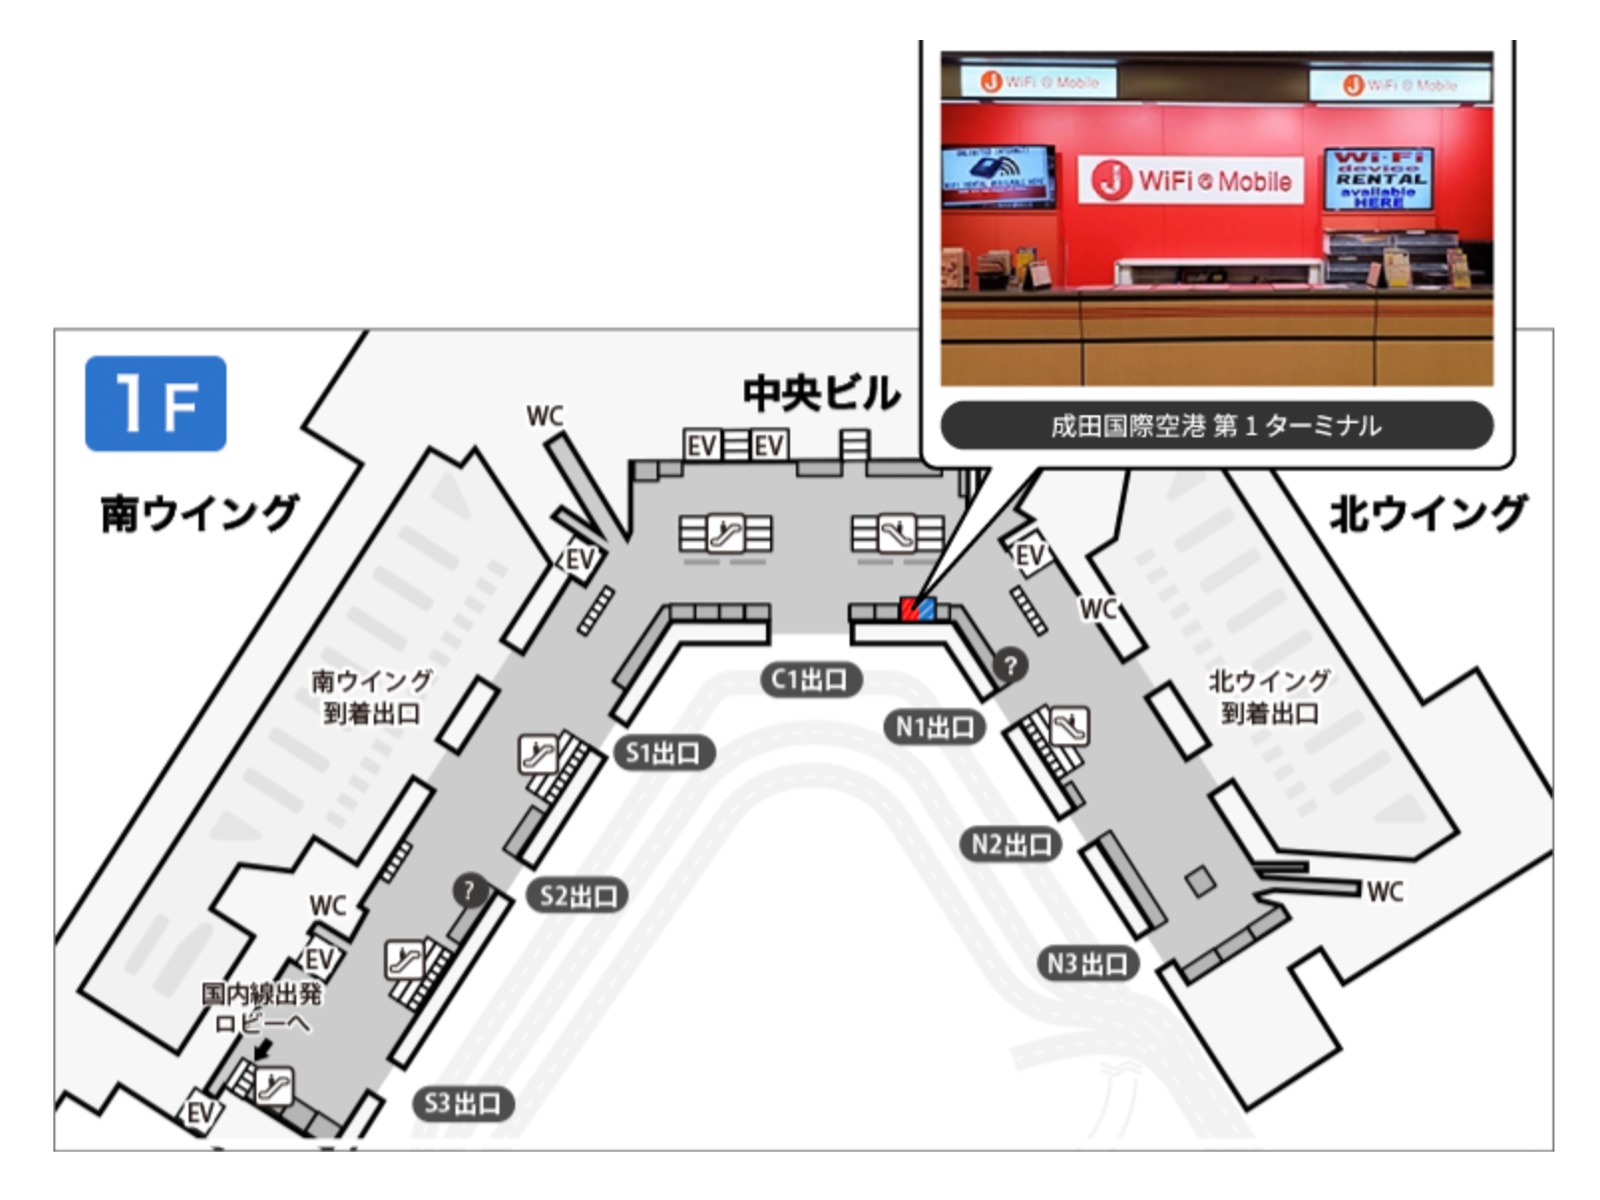 成田国際空港カウンター 第1ターミナル中央ビル 1階 国際線到着ロビー　JWiFi & Mobile × Global WiFiカウンター